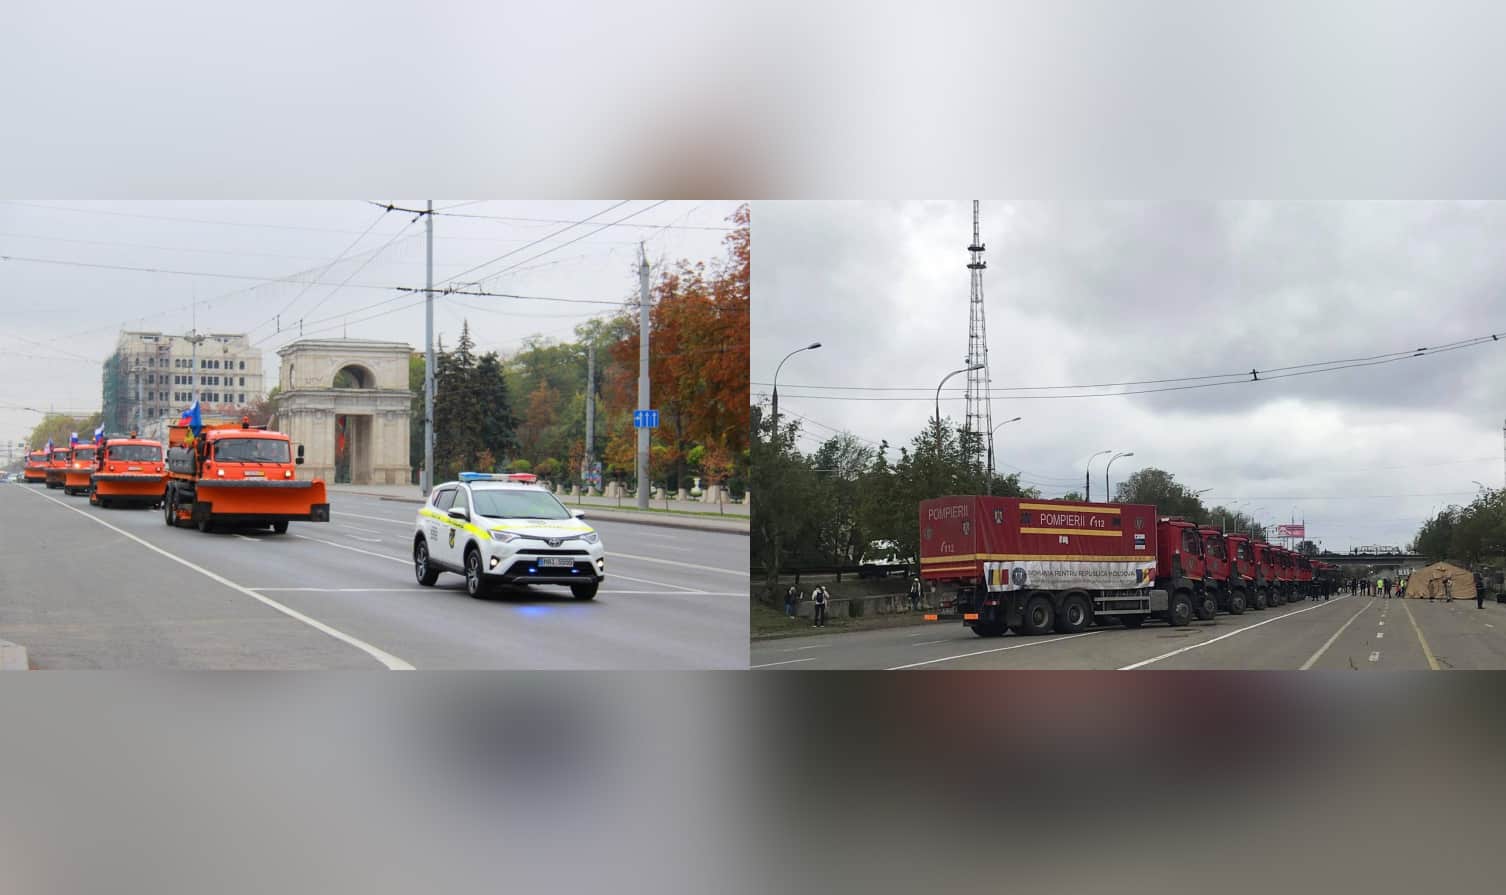 Primire cu fast pe bulevardul central din Chișinău a cinci mașini de deszăpezire donate de Moscova. Pentru ajutorul umanitar din România nu s-a putut